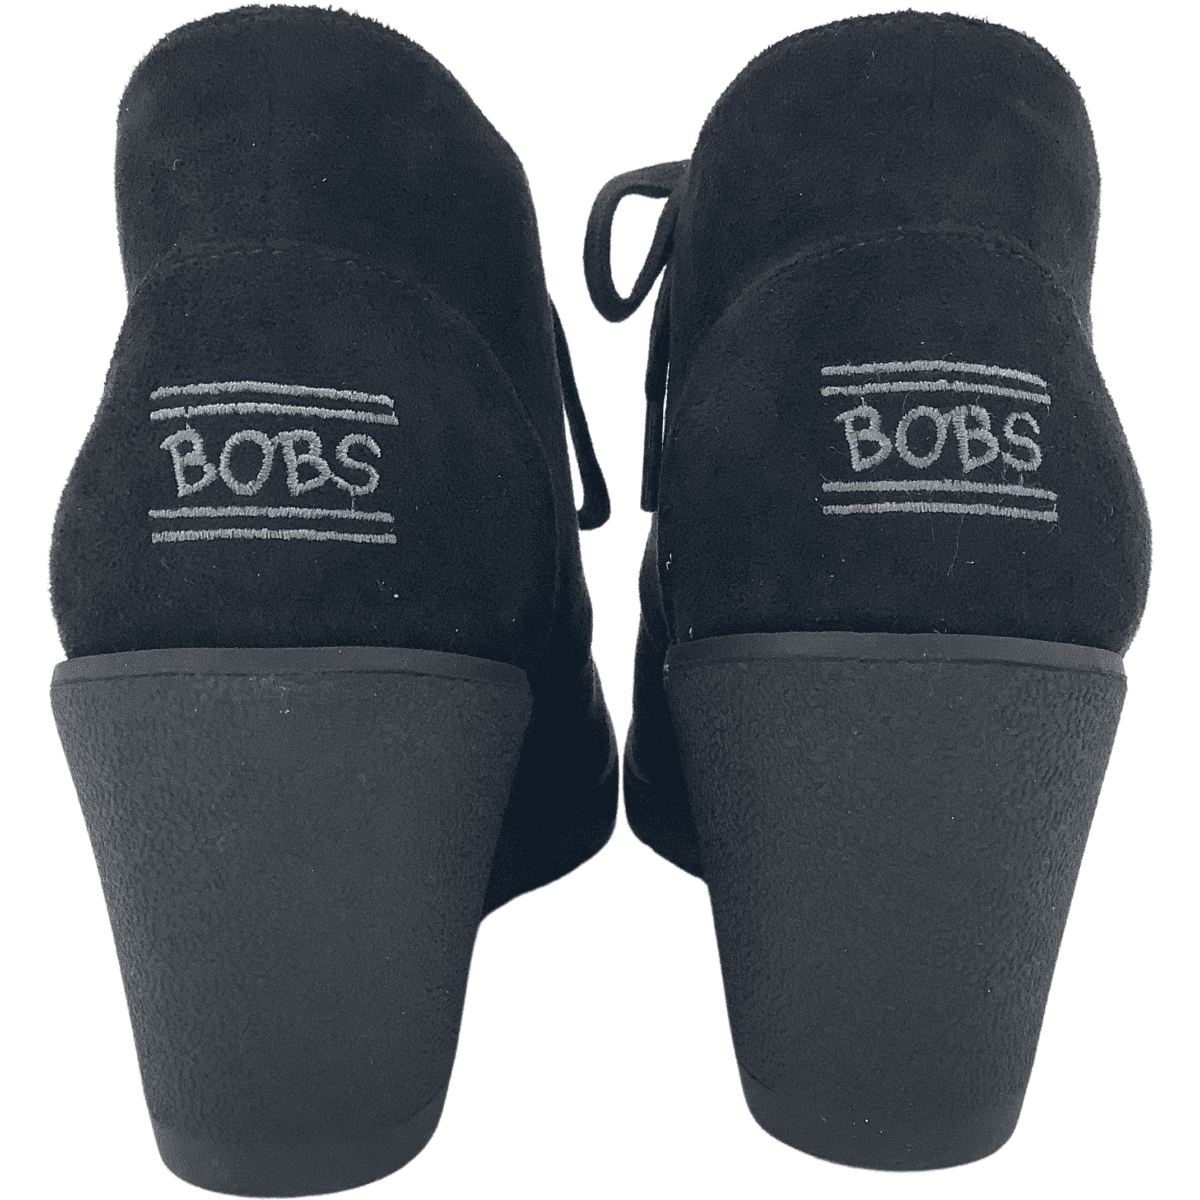 Bobs Heeled Boots2